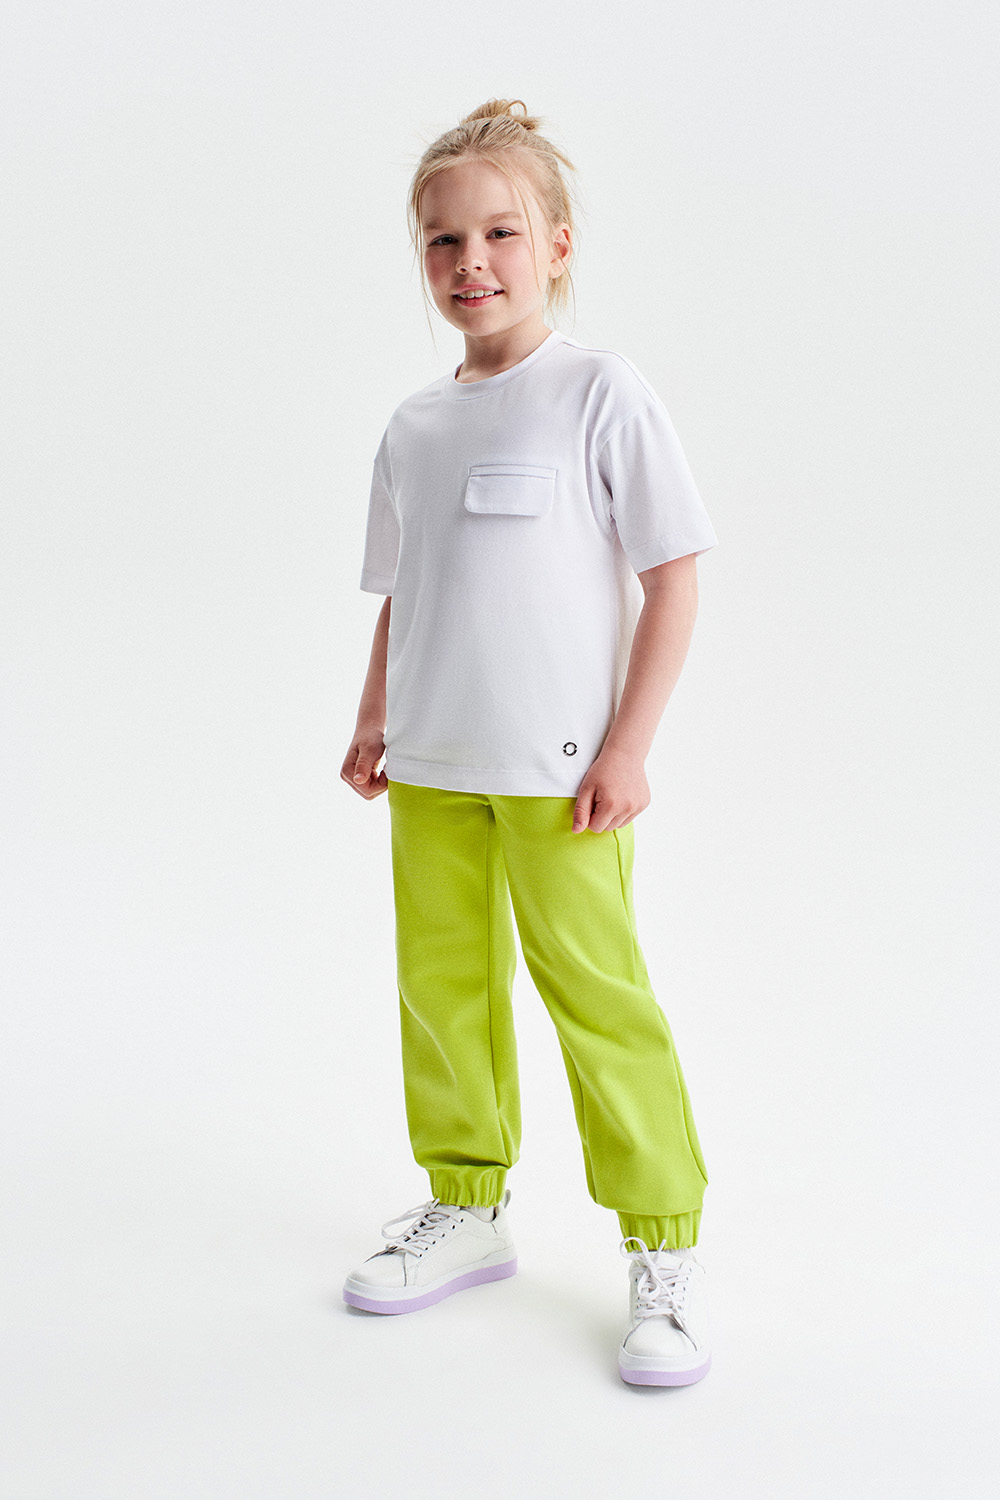 Хлопковая футболка (SSLSG-428-28401-200) Silver spoon